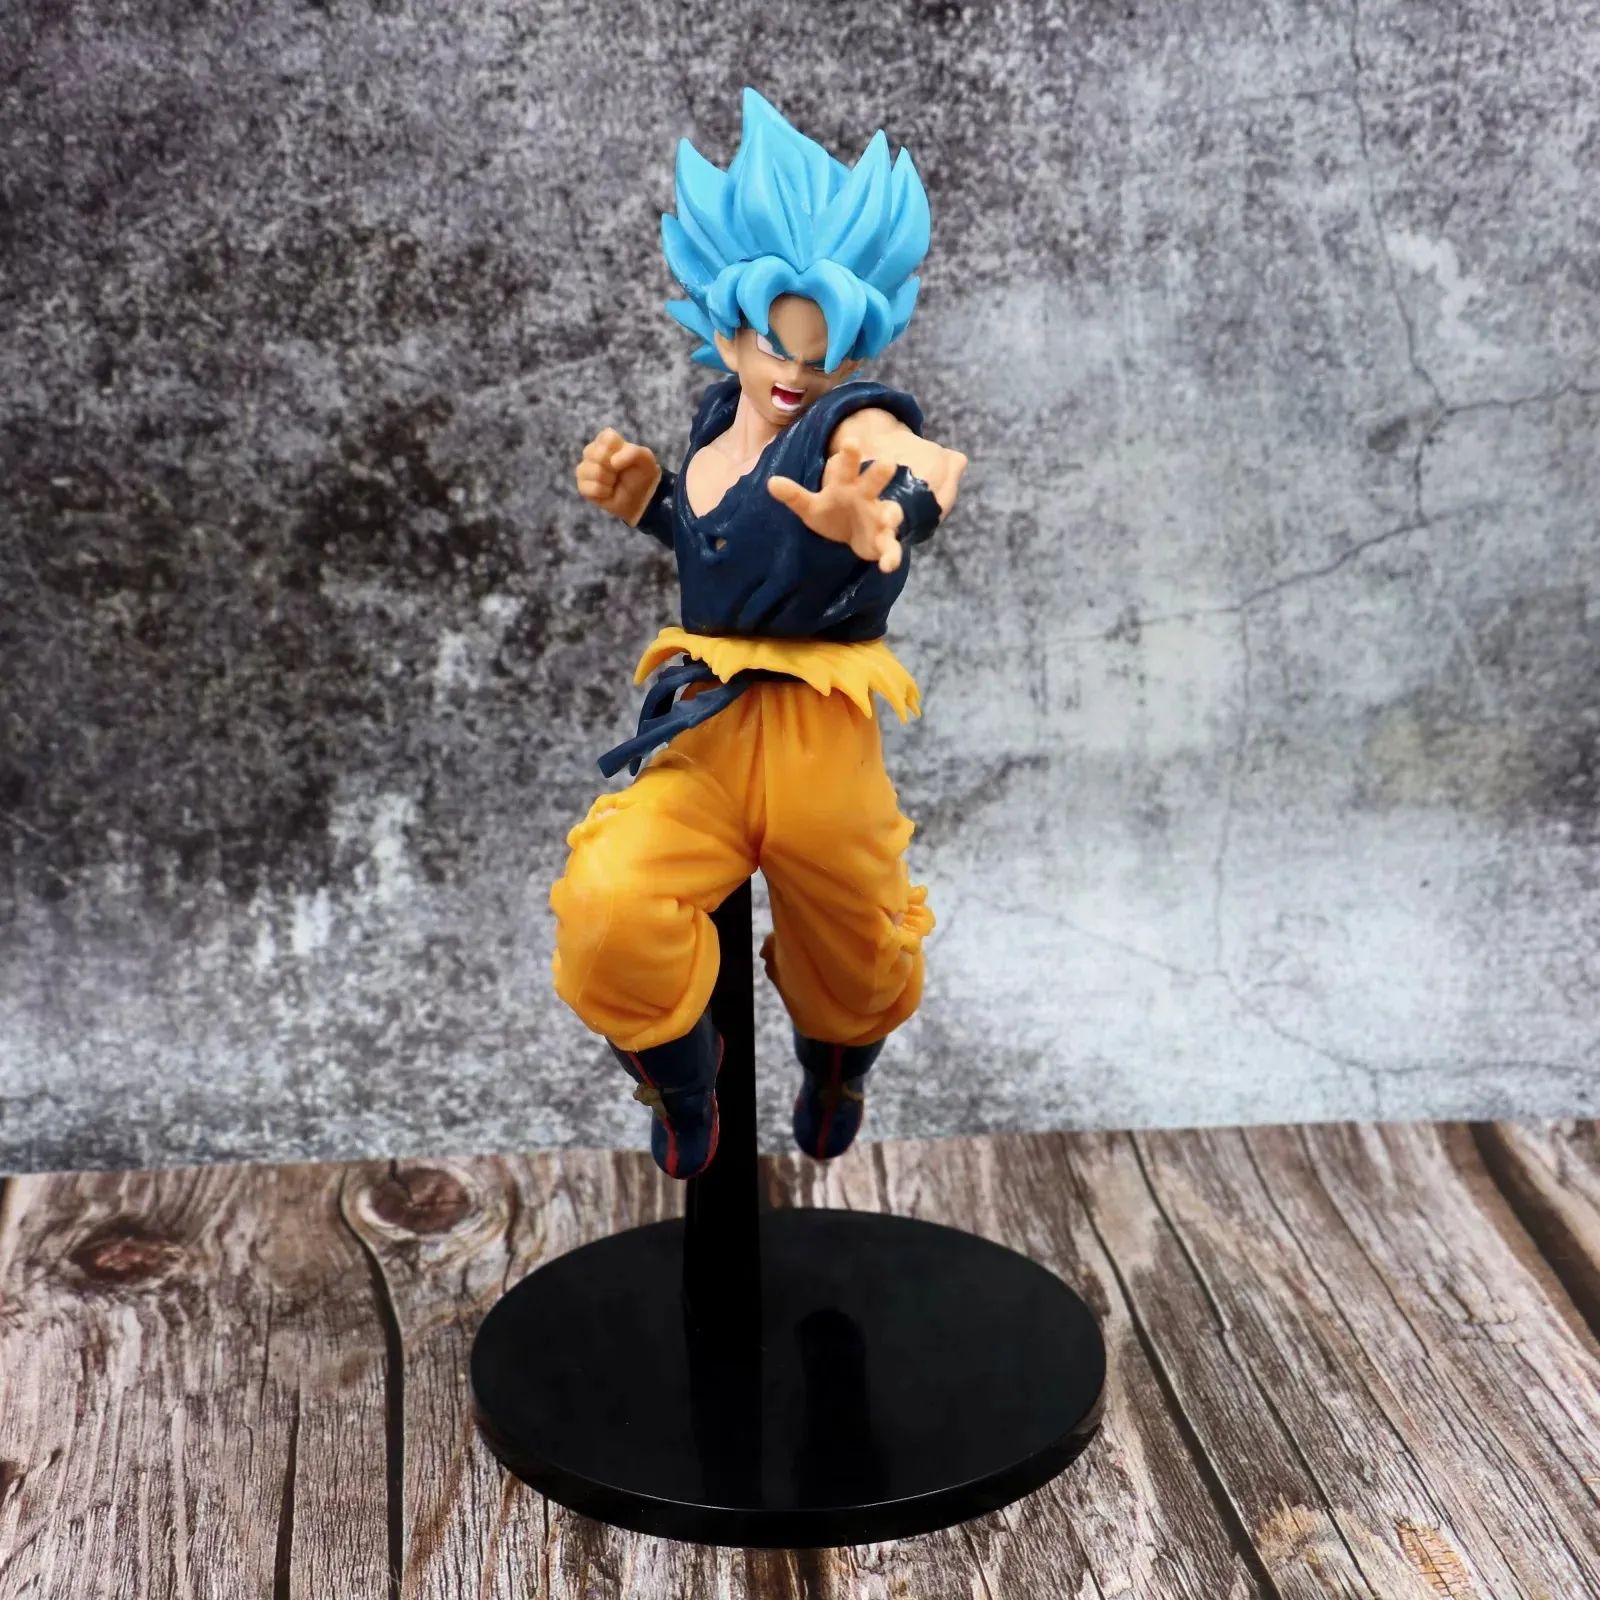 Dragon Ball capelli blu Vegeta capelli blu Wukong bambola box box kit articoli per l'arredamento modello altezza circa 22 cm